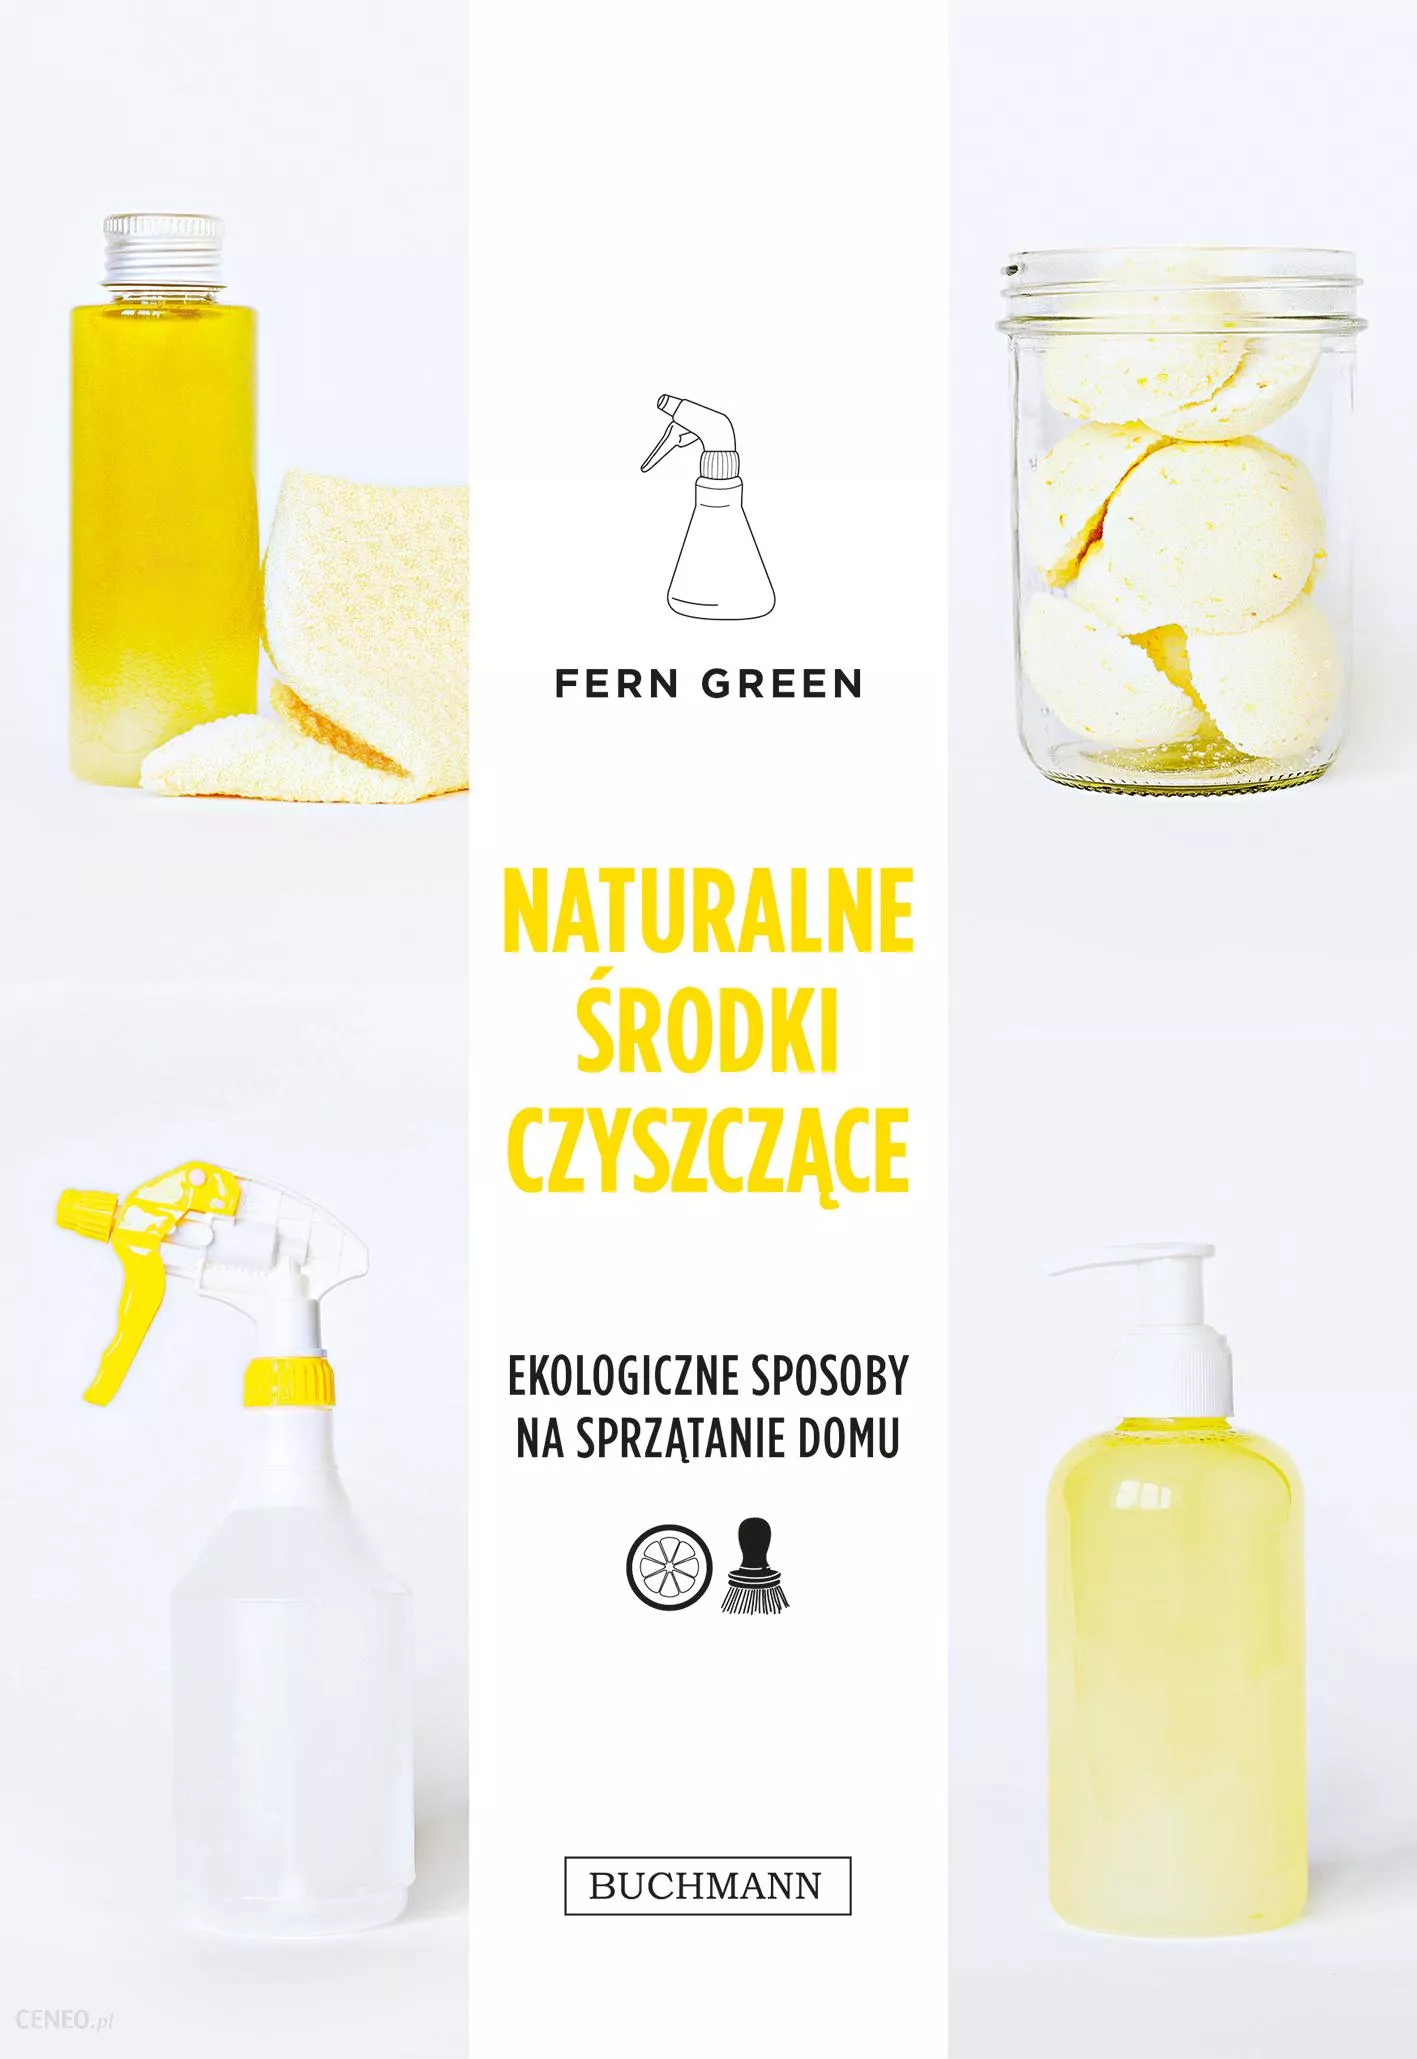 "Naturalne środki czyszczące", Fern Green